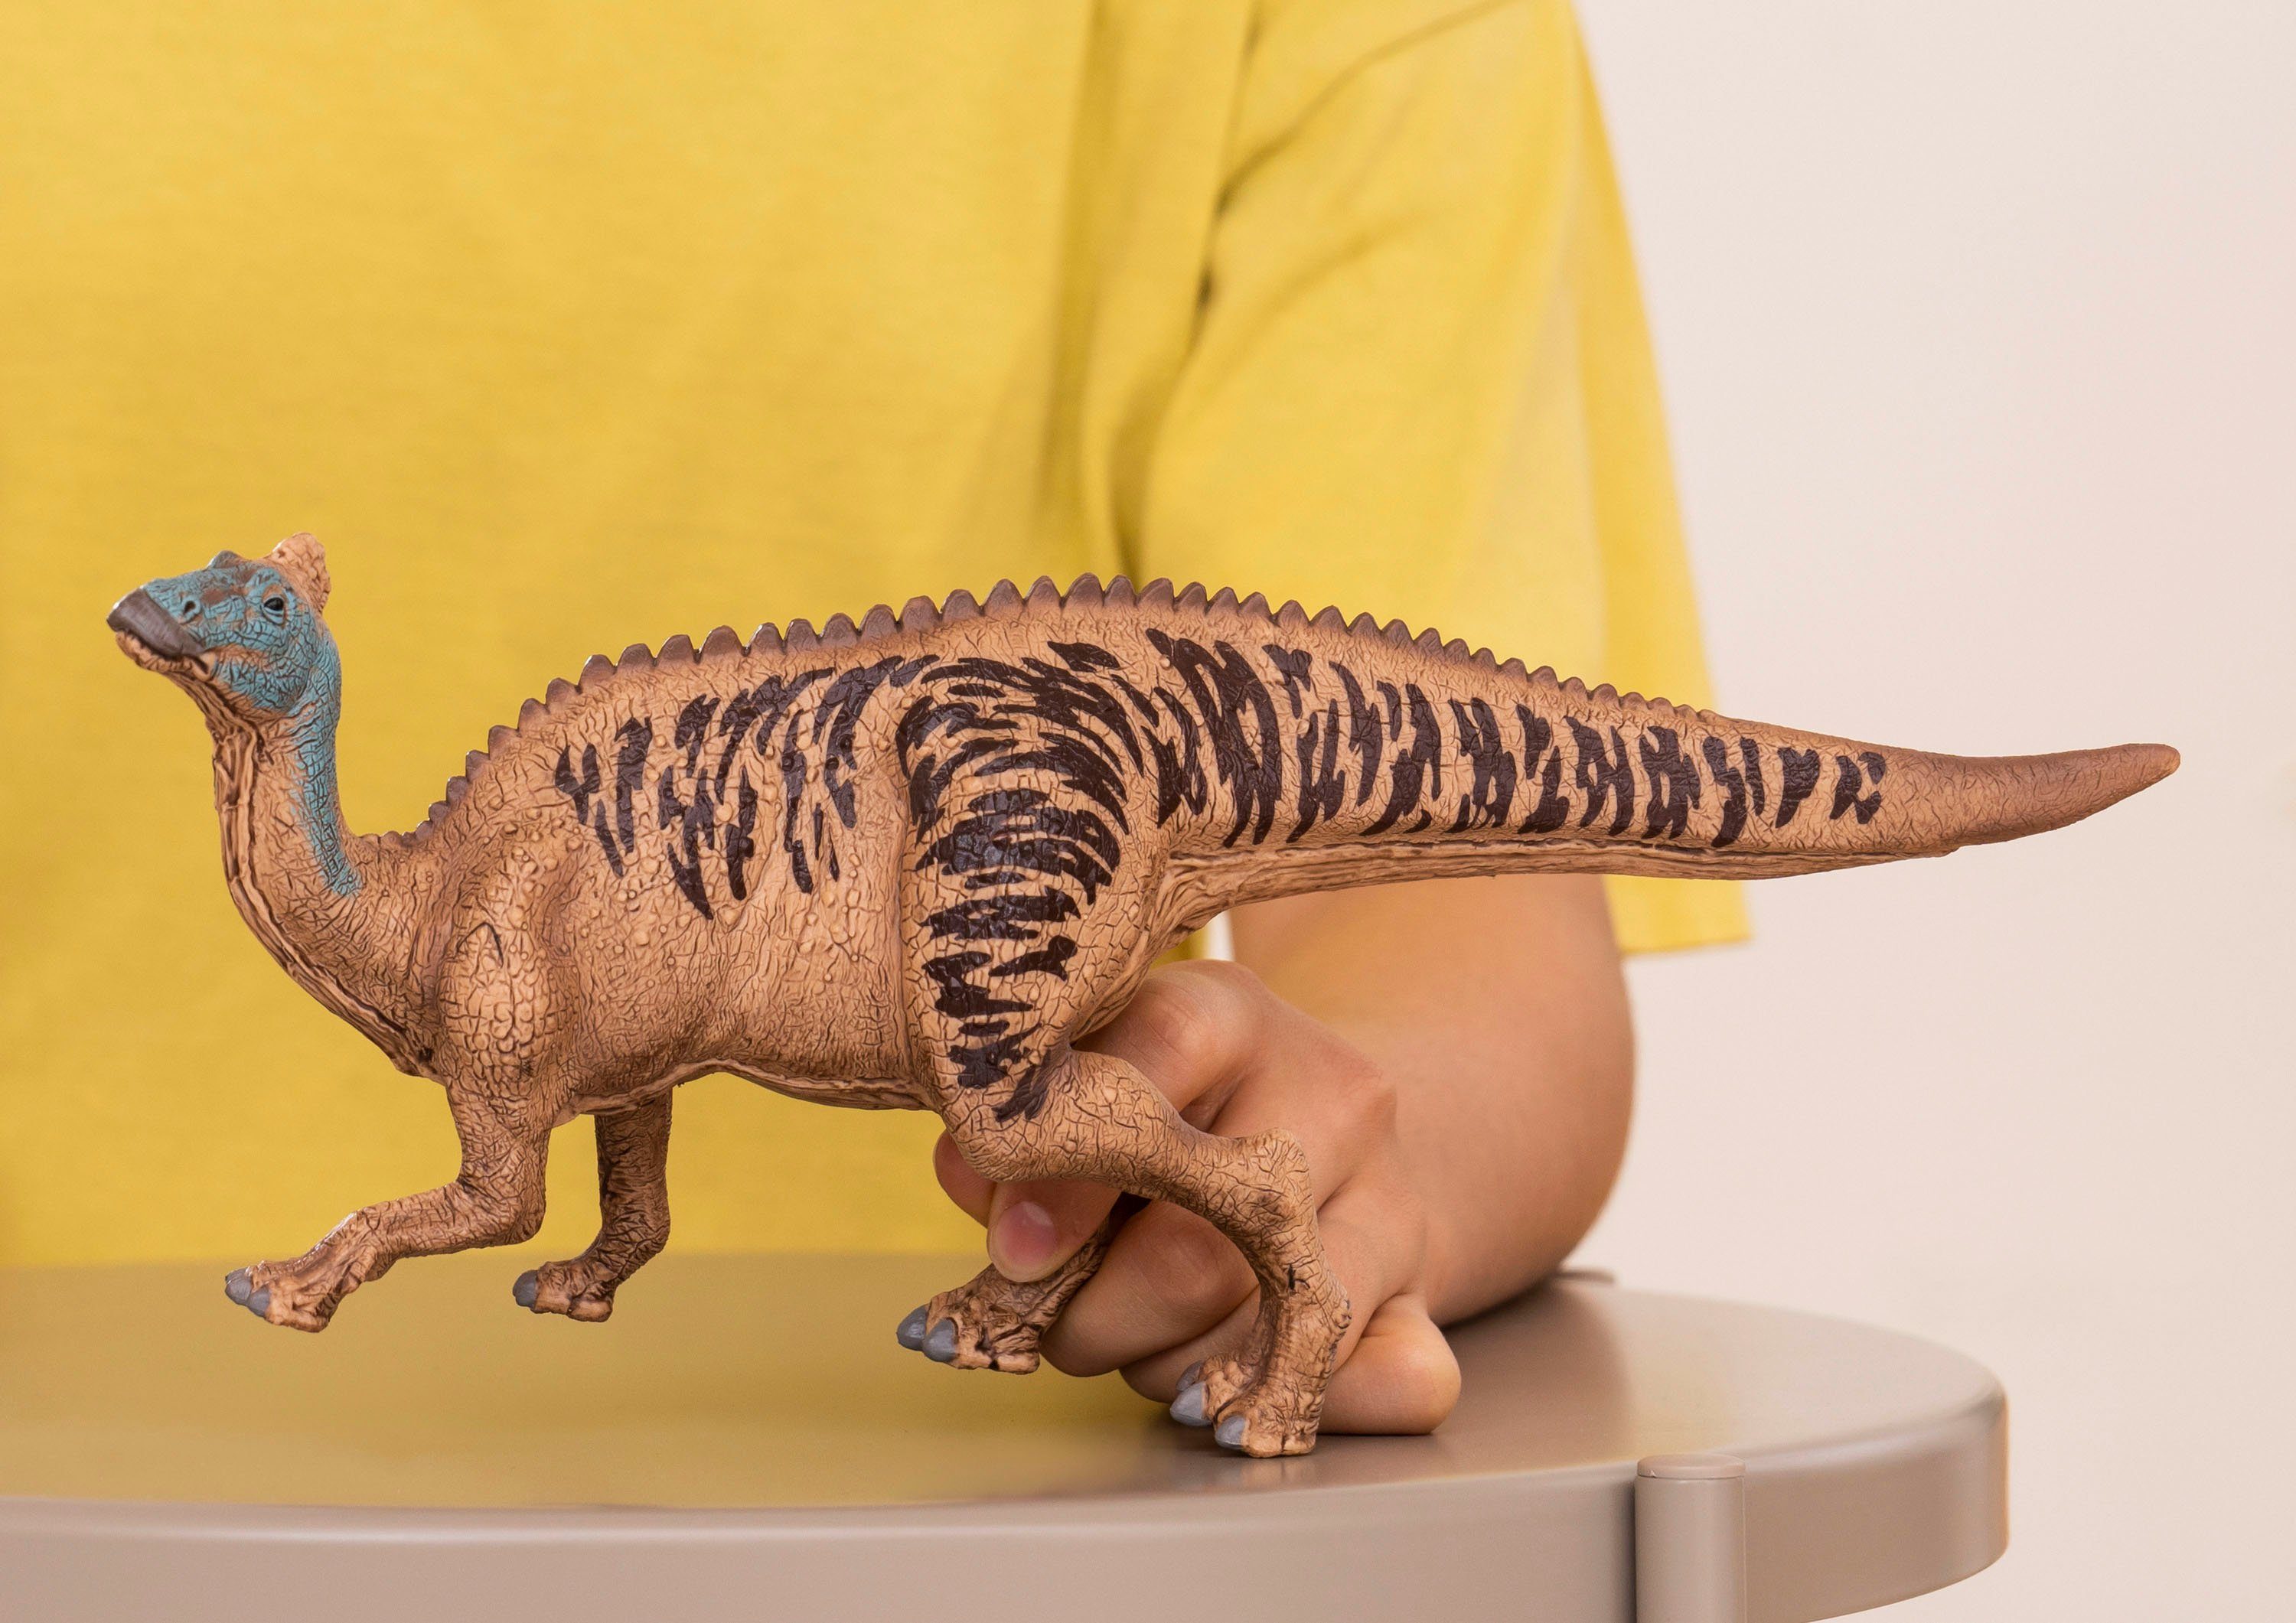 Edmontosaurus Schleich® Spielfigur (15037) DINOSAURS,